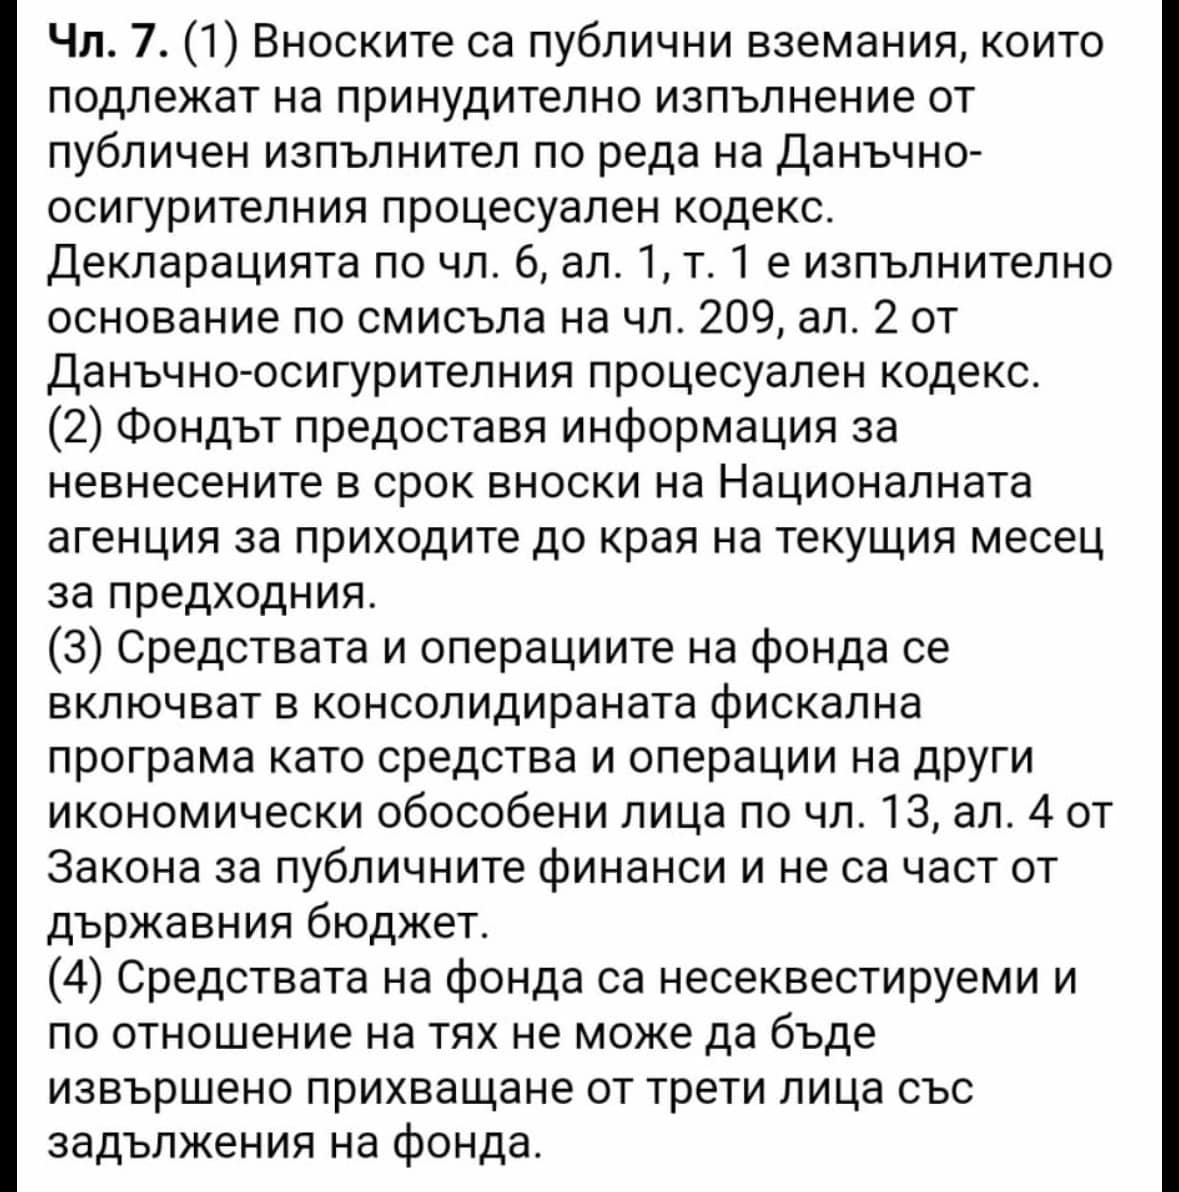 Деян Добрев фейсбукДелян ДобревИкономическият министър казал че ако Лукойл не